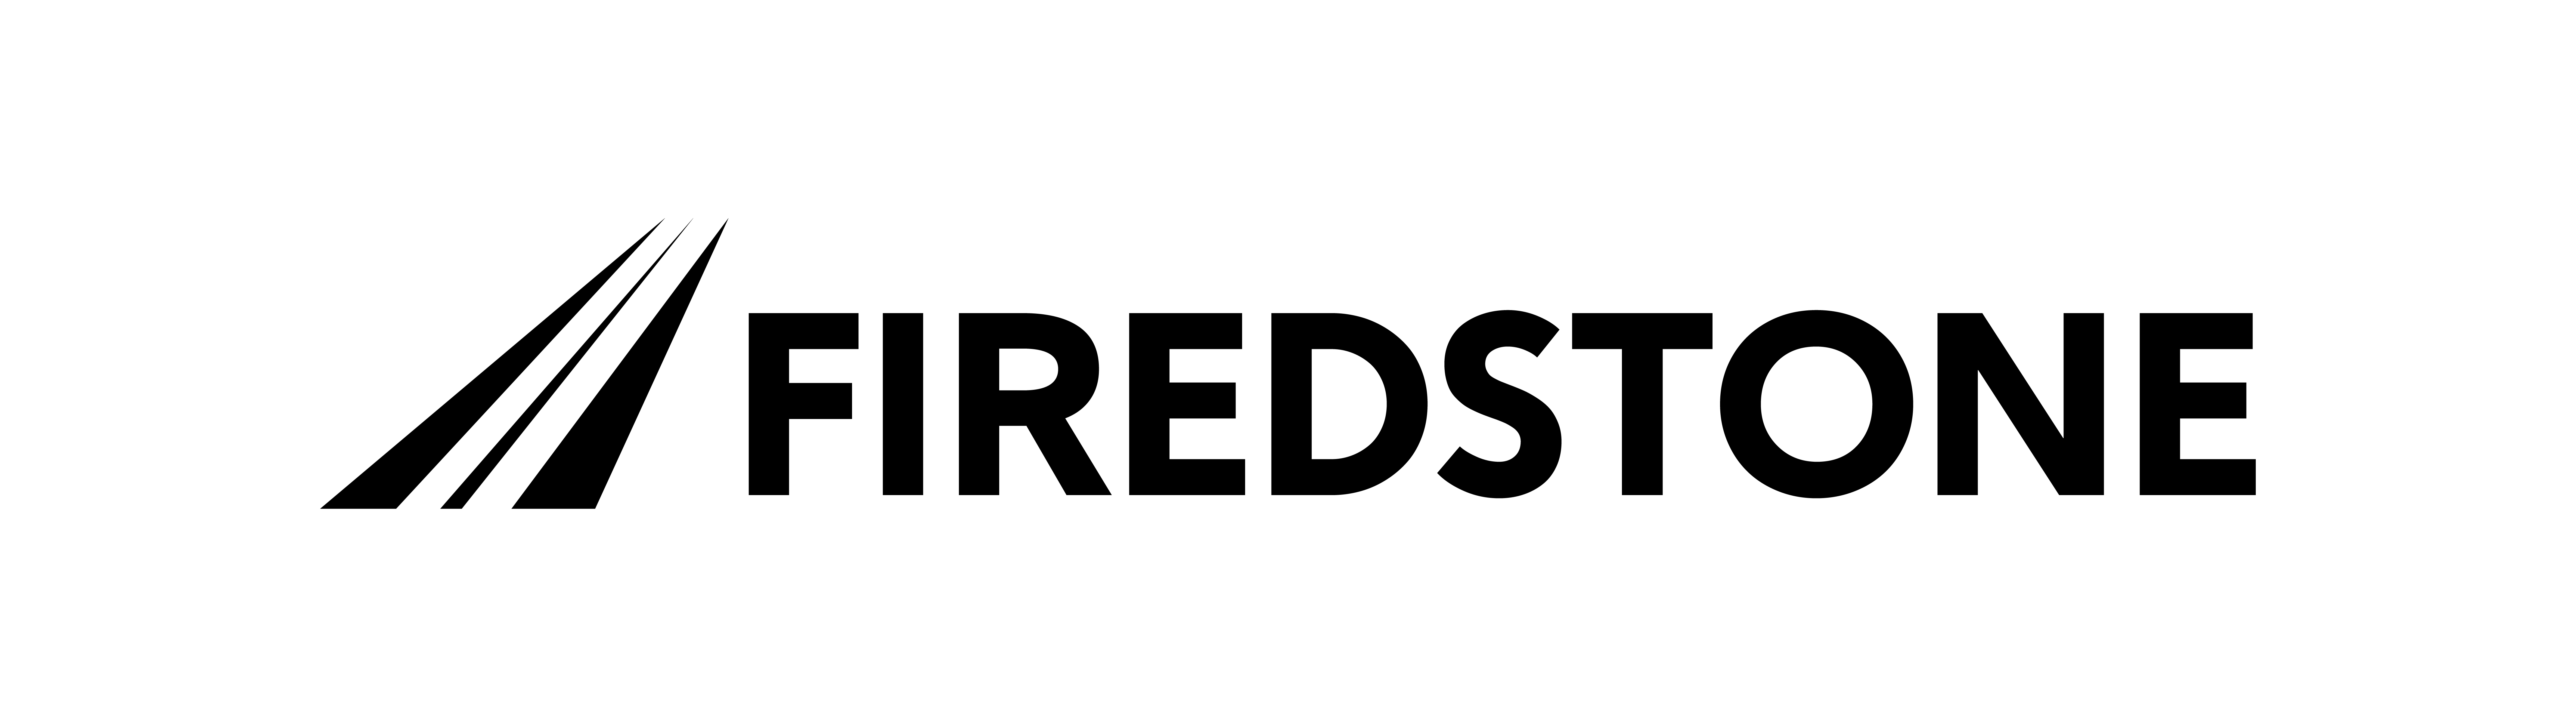 logo for FIREDSTONE LTD